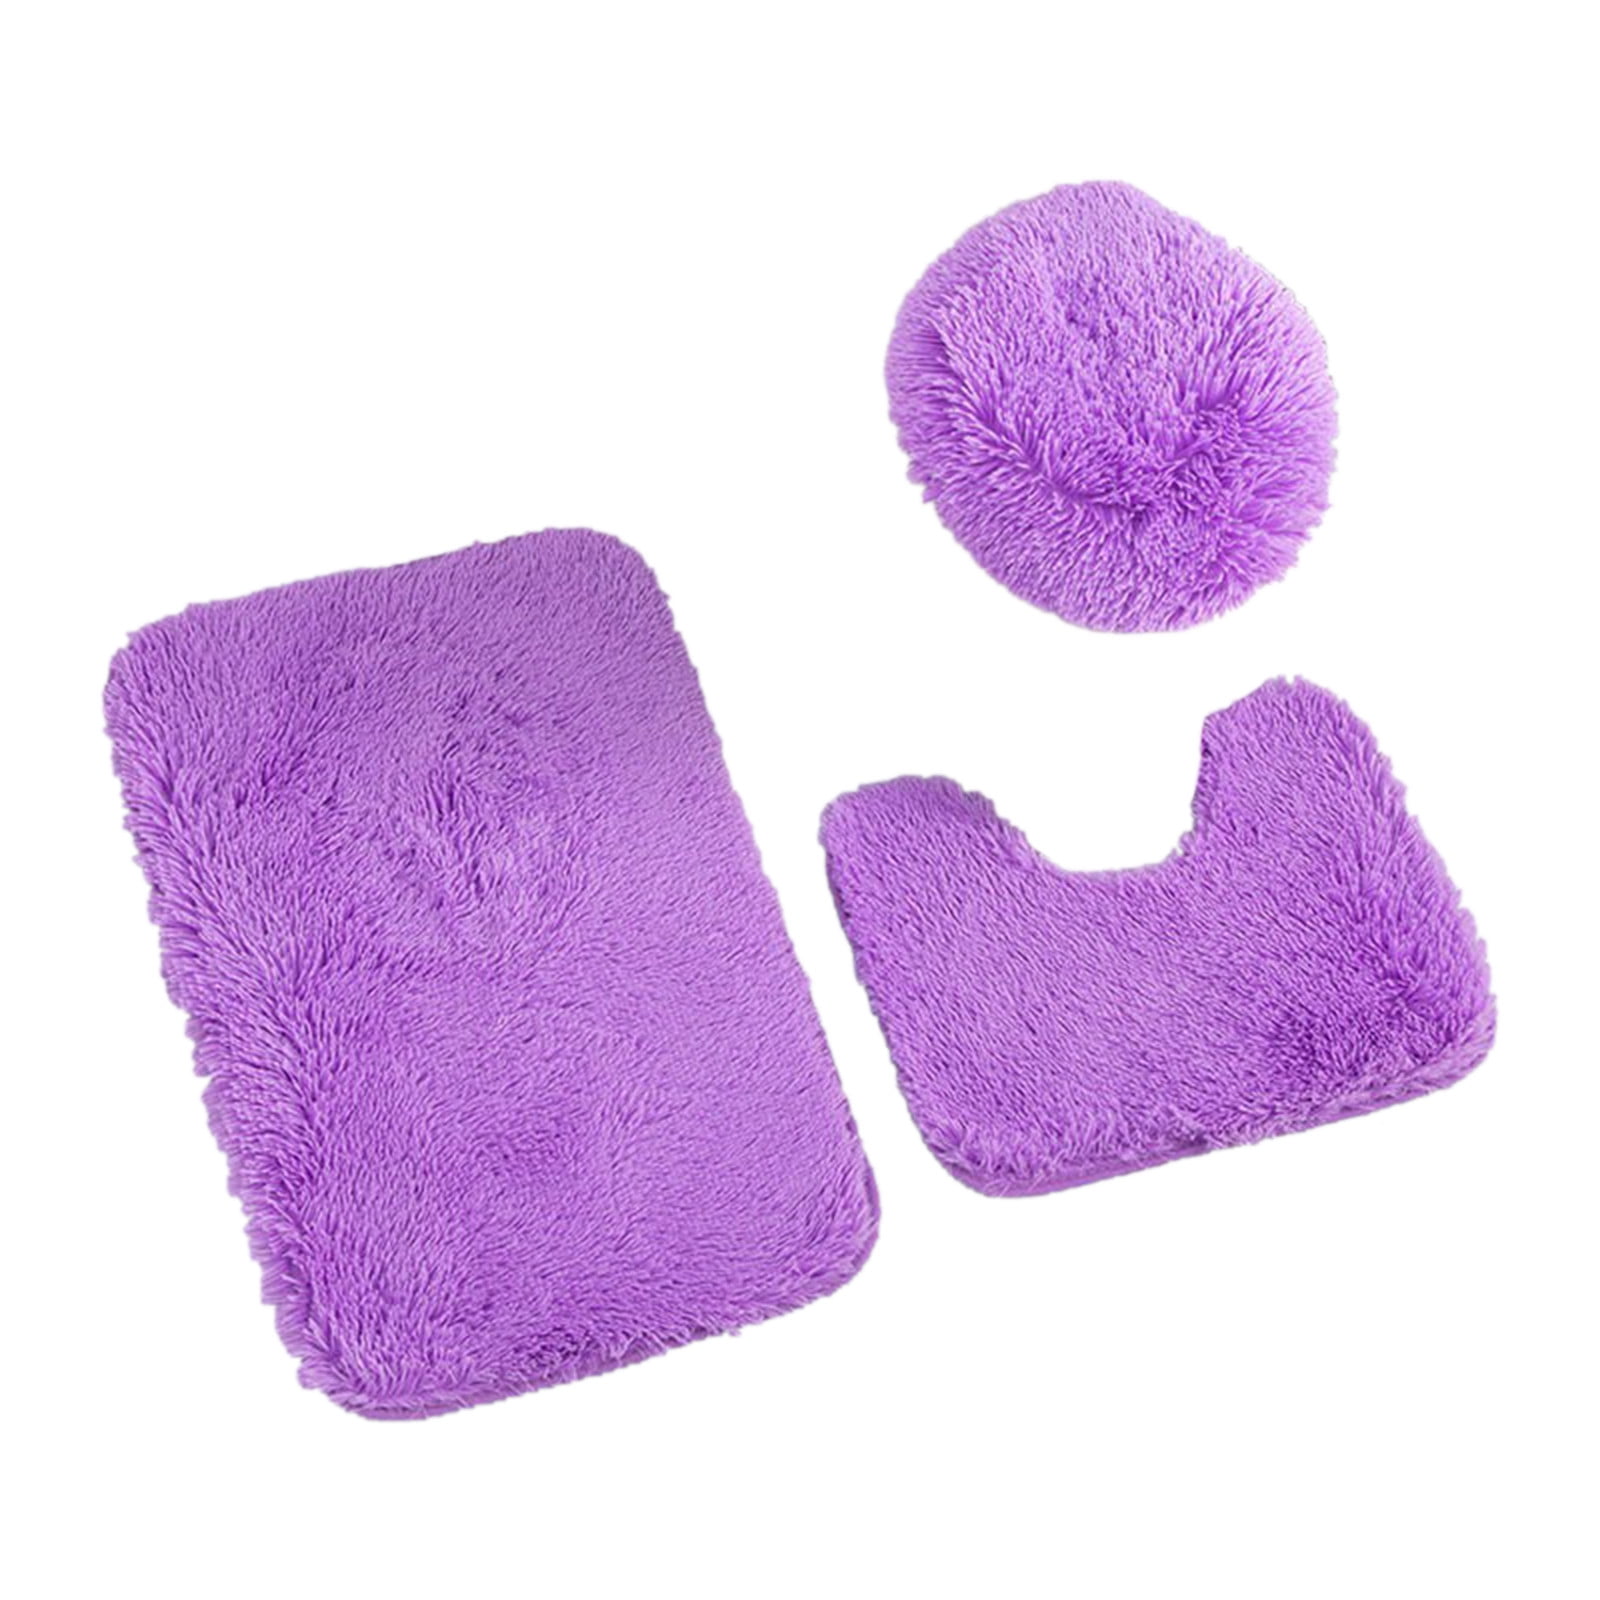 CHAPLLE Bath Rug Set Lavender Purple Floral 3 Piece Bathroom Rugs Set Bath Rug Contour Mat and Toilet Lid Cover